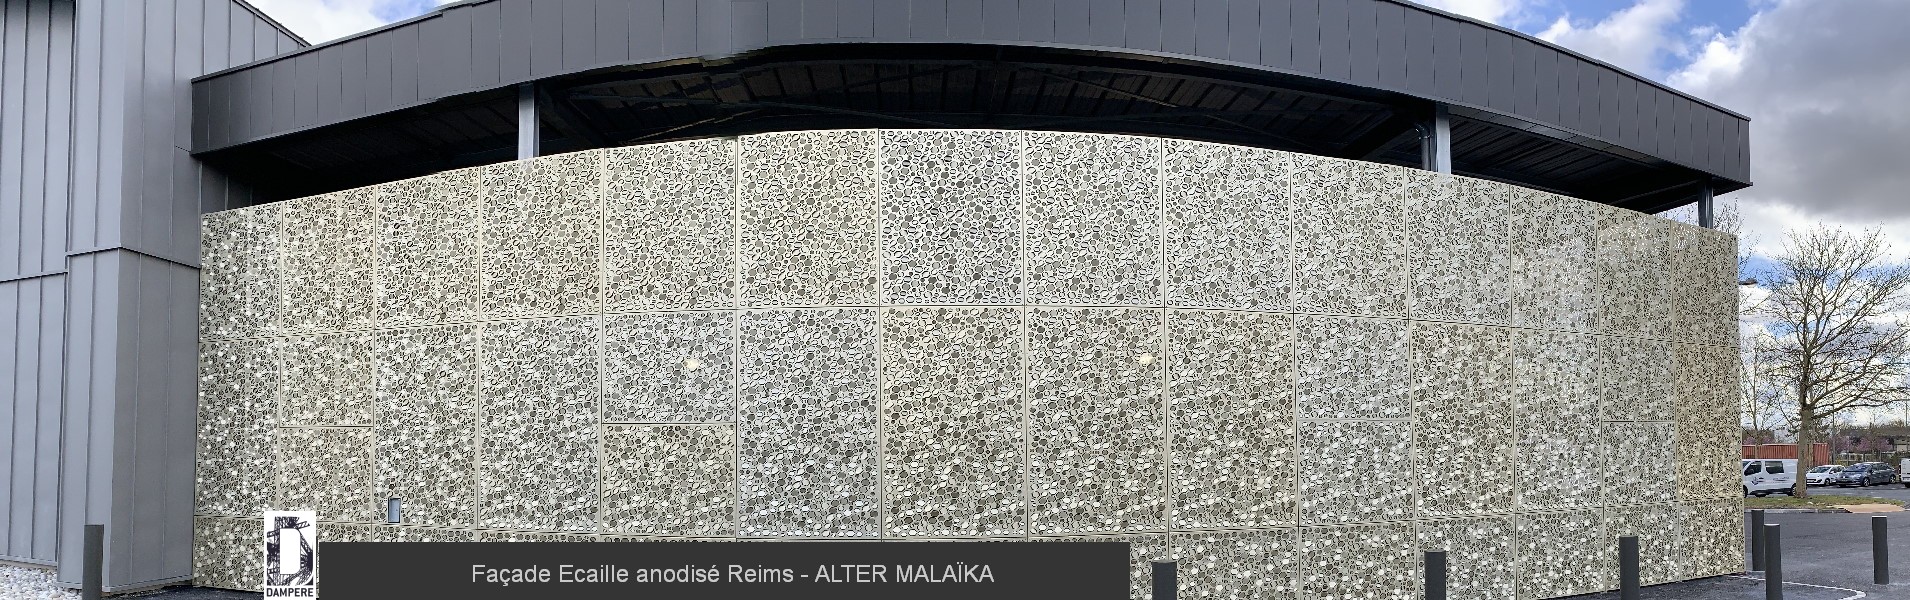 Facade Ecaille anodise Reims ALTER MALAIKA 6